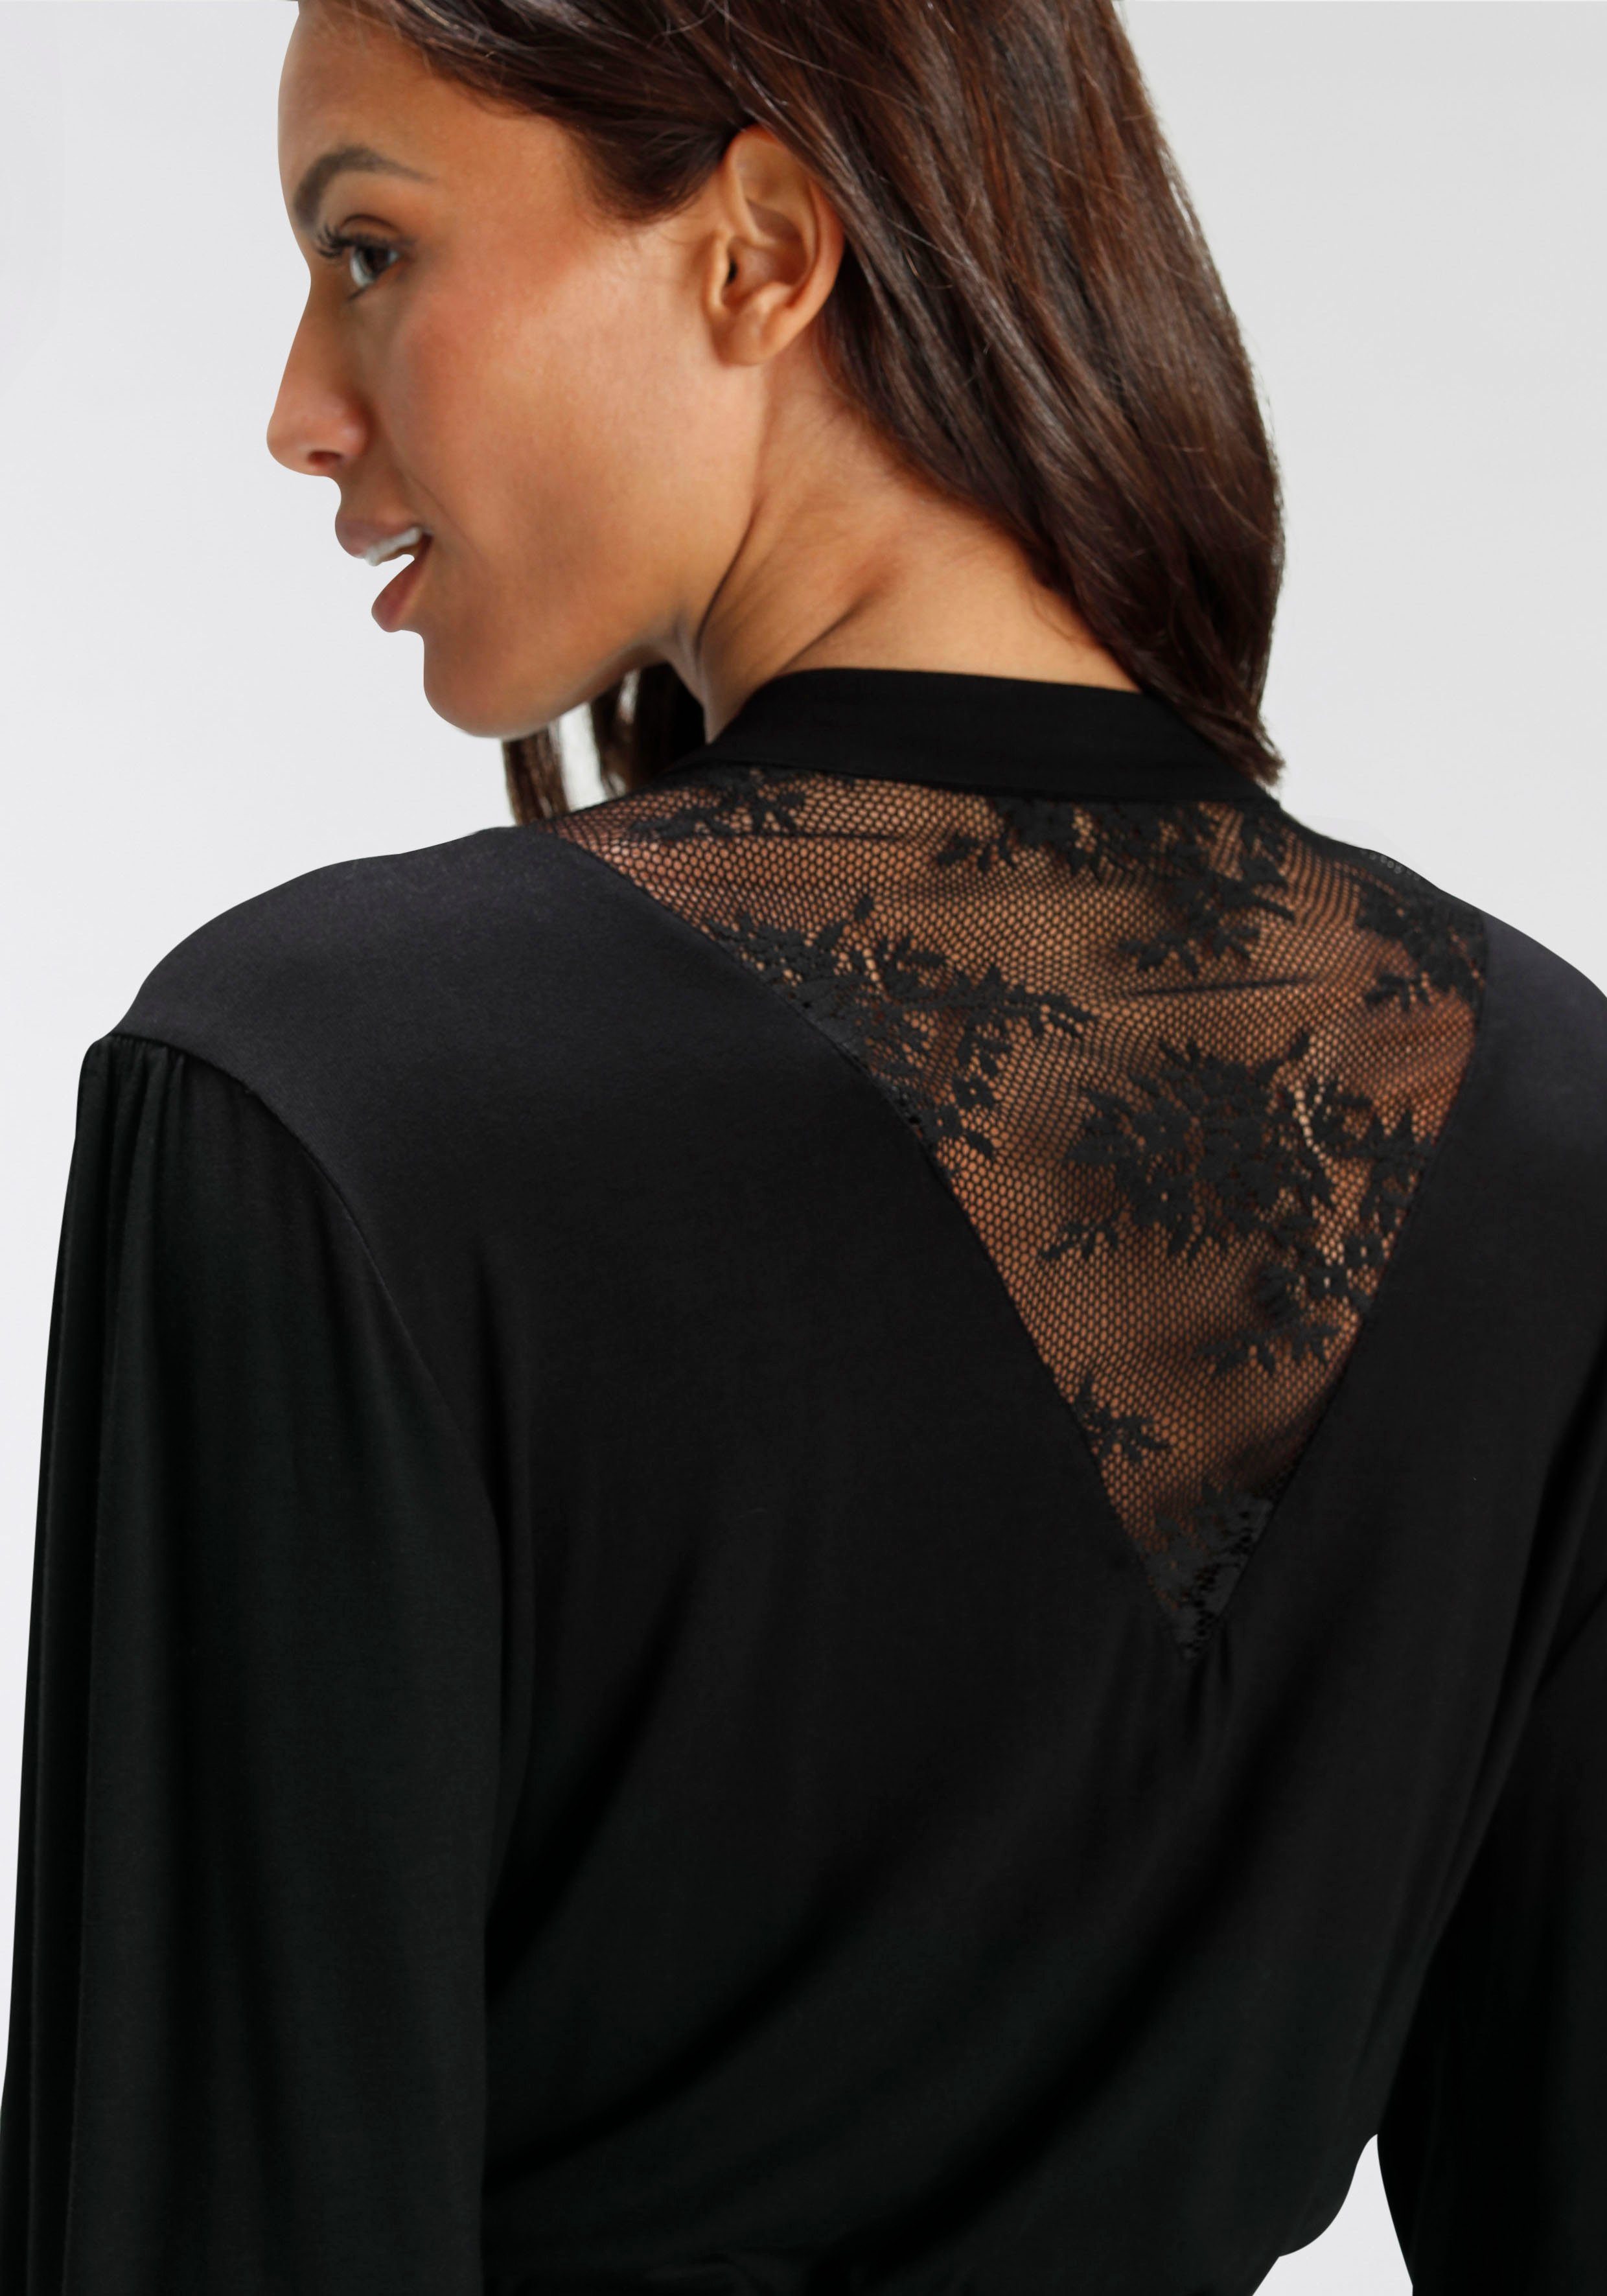 Viskose, Banani mit Kurzform, schwarz Bruno Spitzendetails Kimono, schönen